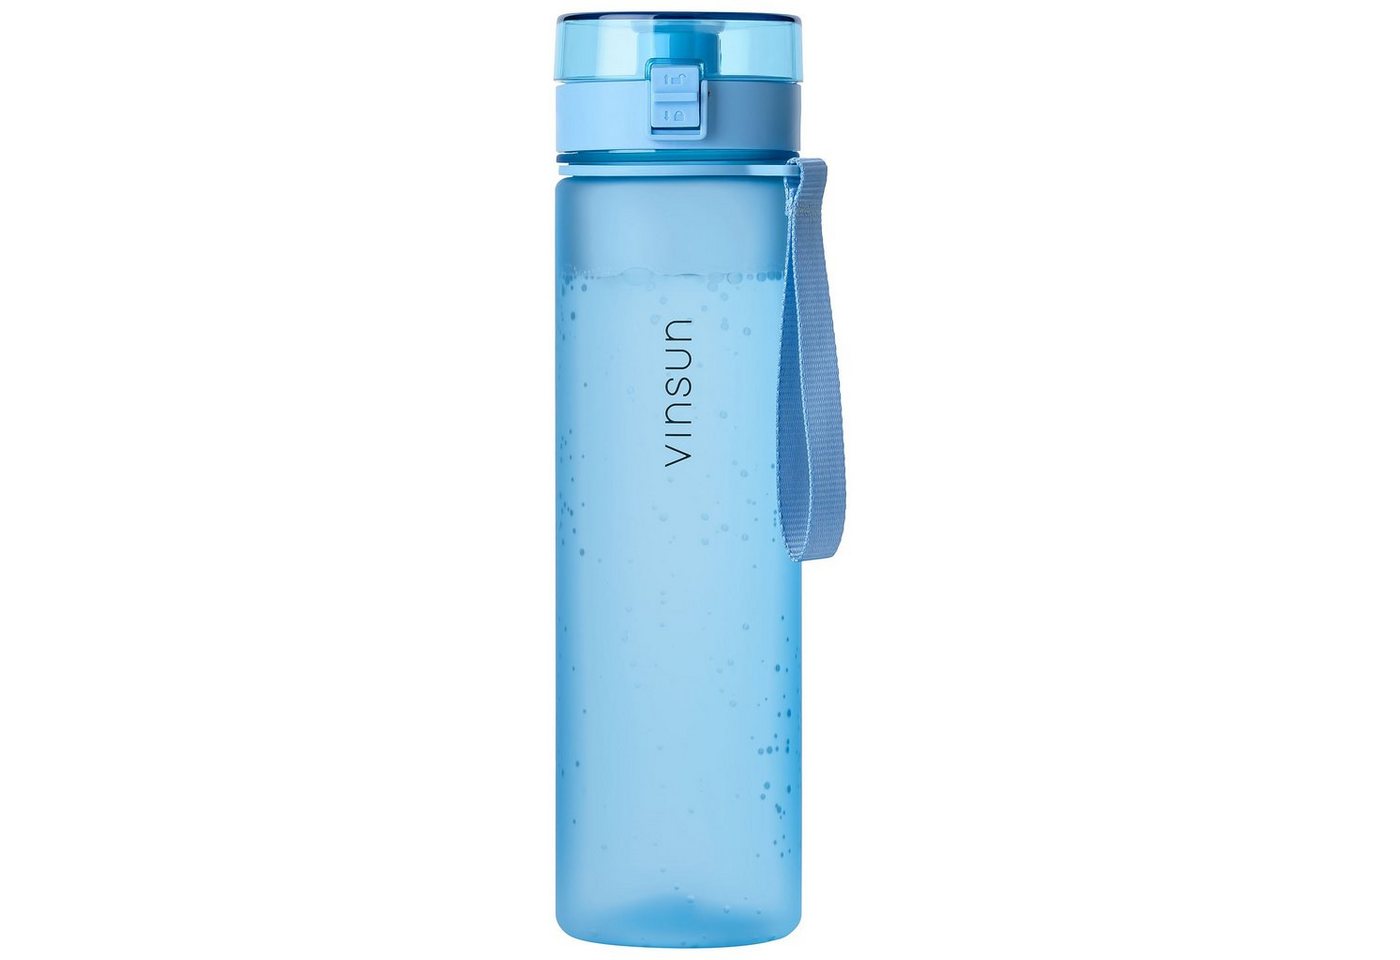 Vinsun Trinkflasche Trinkflasche 1L, Kohlensäure geeignet, auslaufsicher - Hell Blau, BPA frei, Geruchs- und Geschmacksneutral, Kohlensäure, auslaufsicher von Vinsun